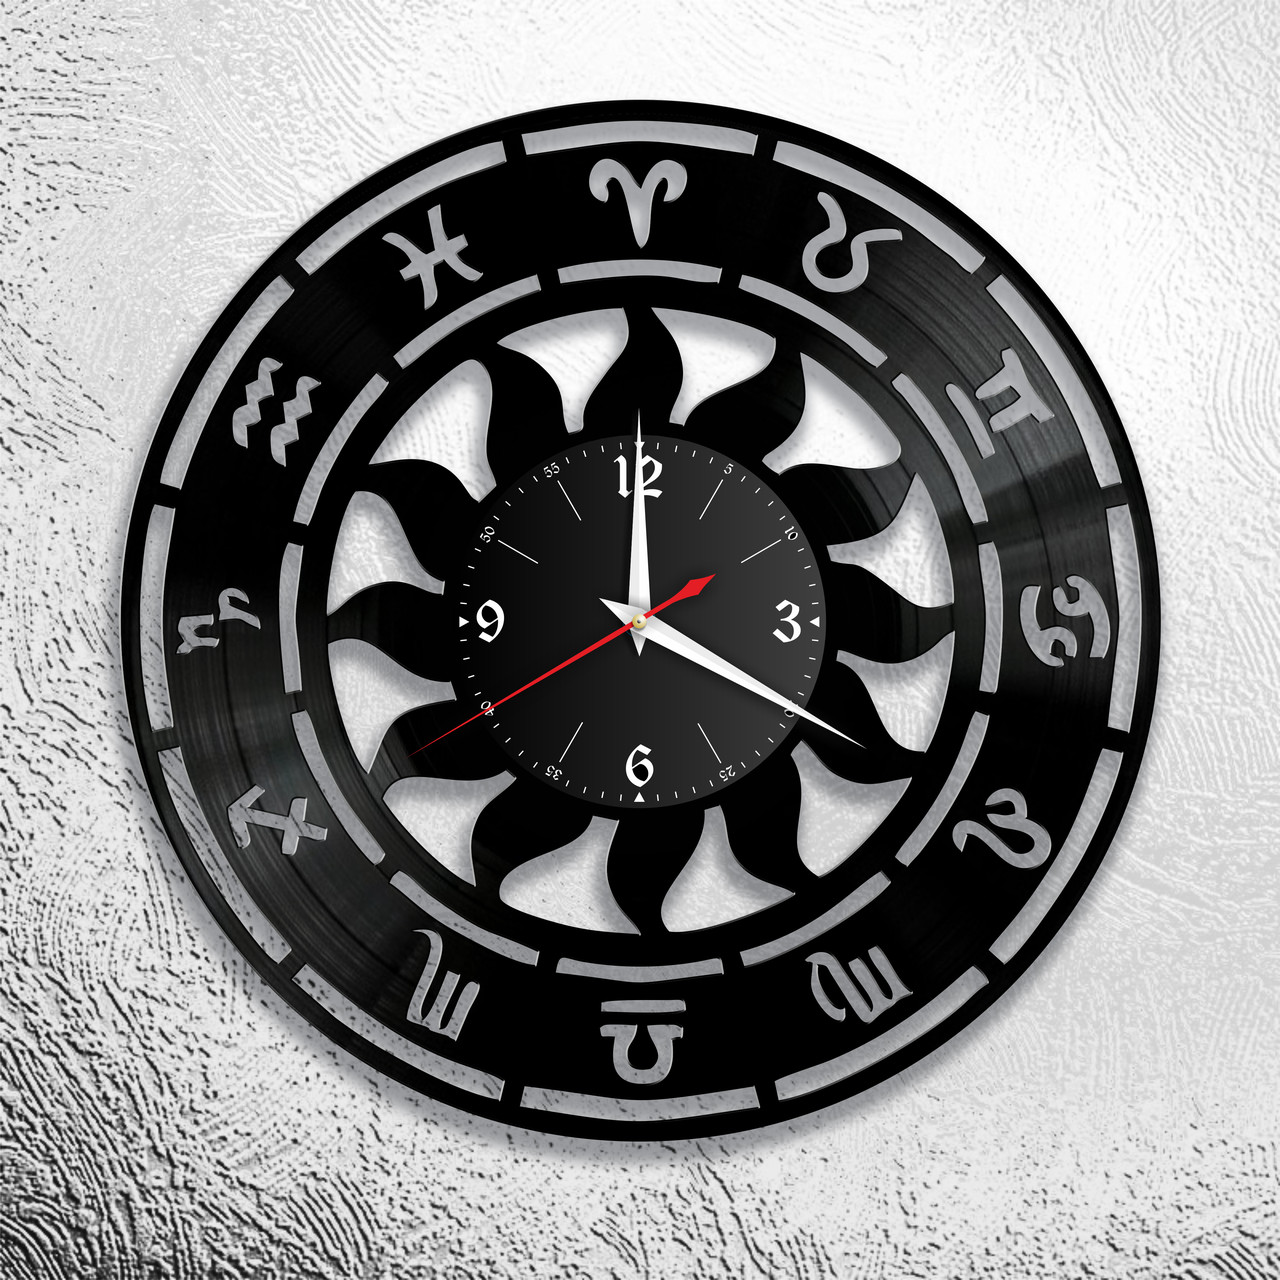 Оригинальные часы из виниловых пластинок  "Зодиак"  версия 1, фото 1